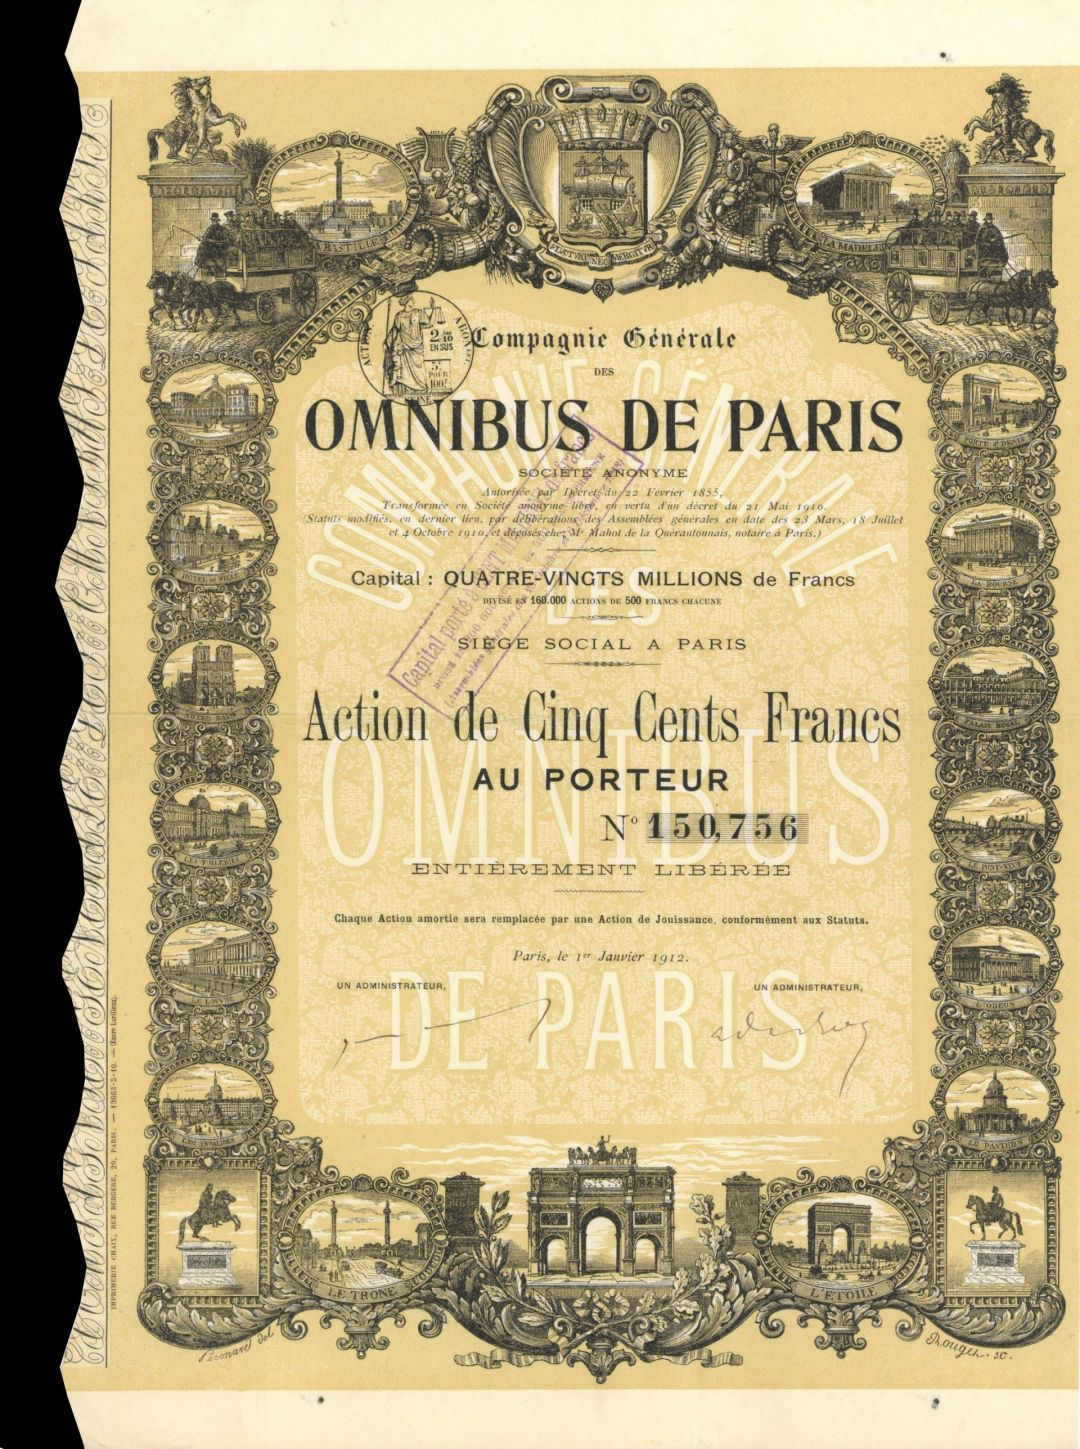 Omnibus de Paris - Stock Certificate